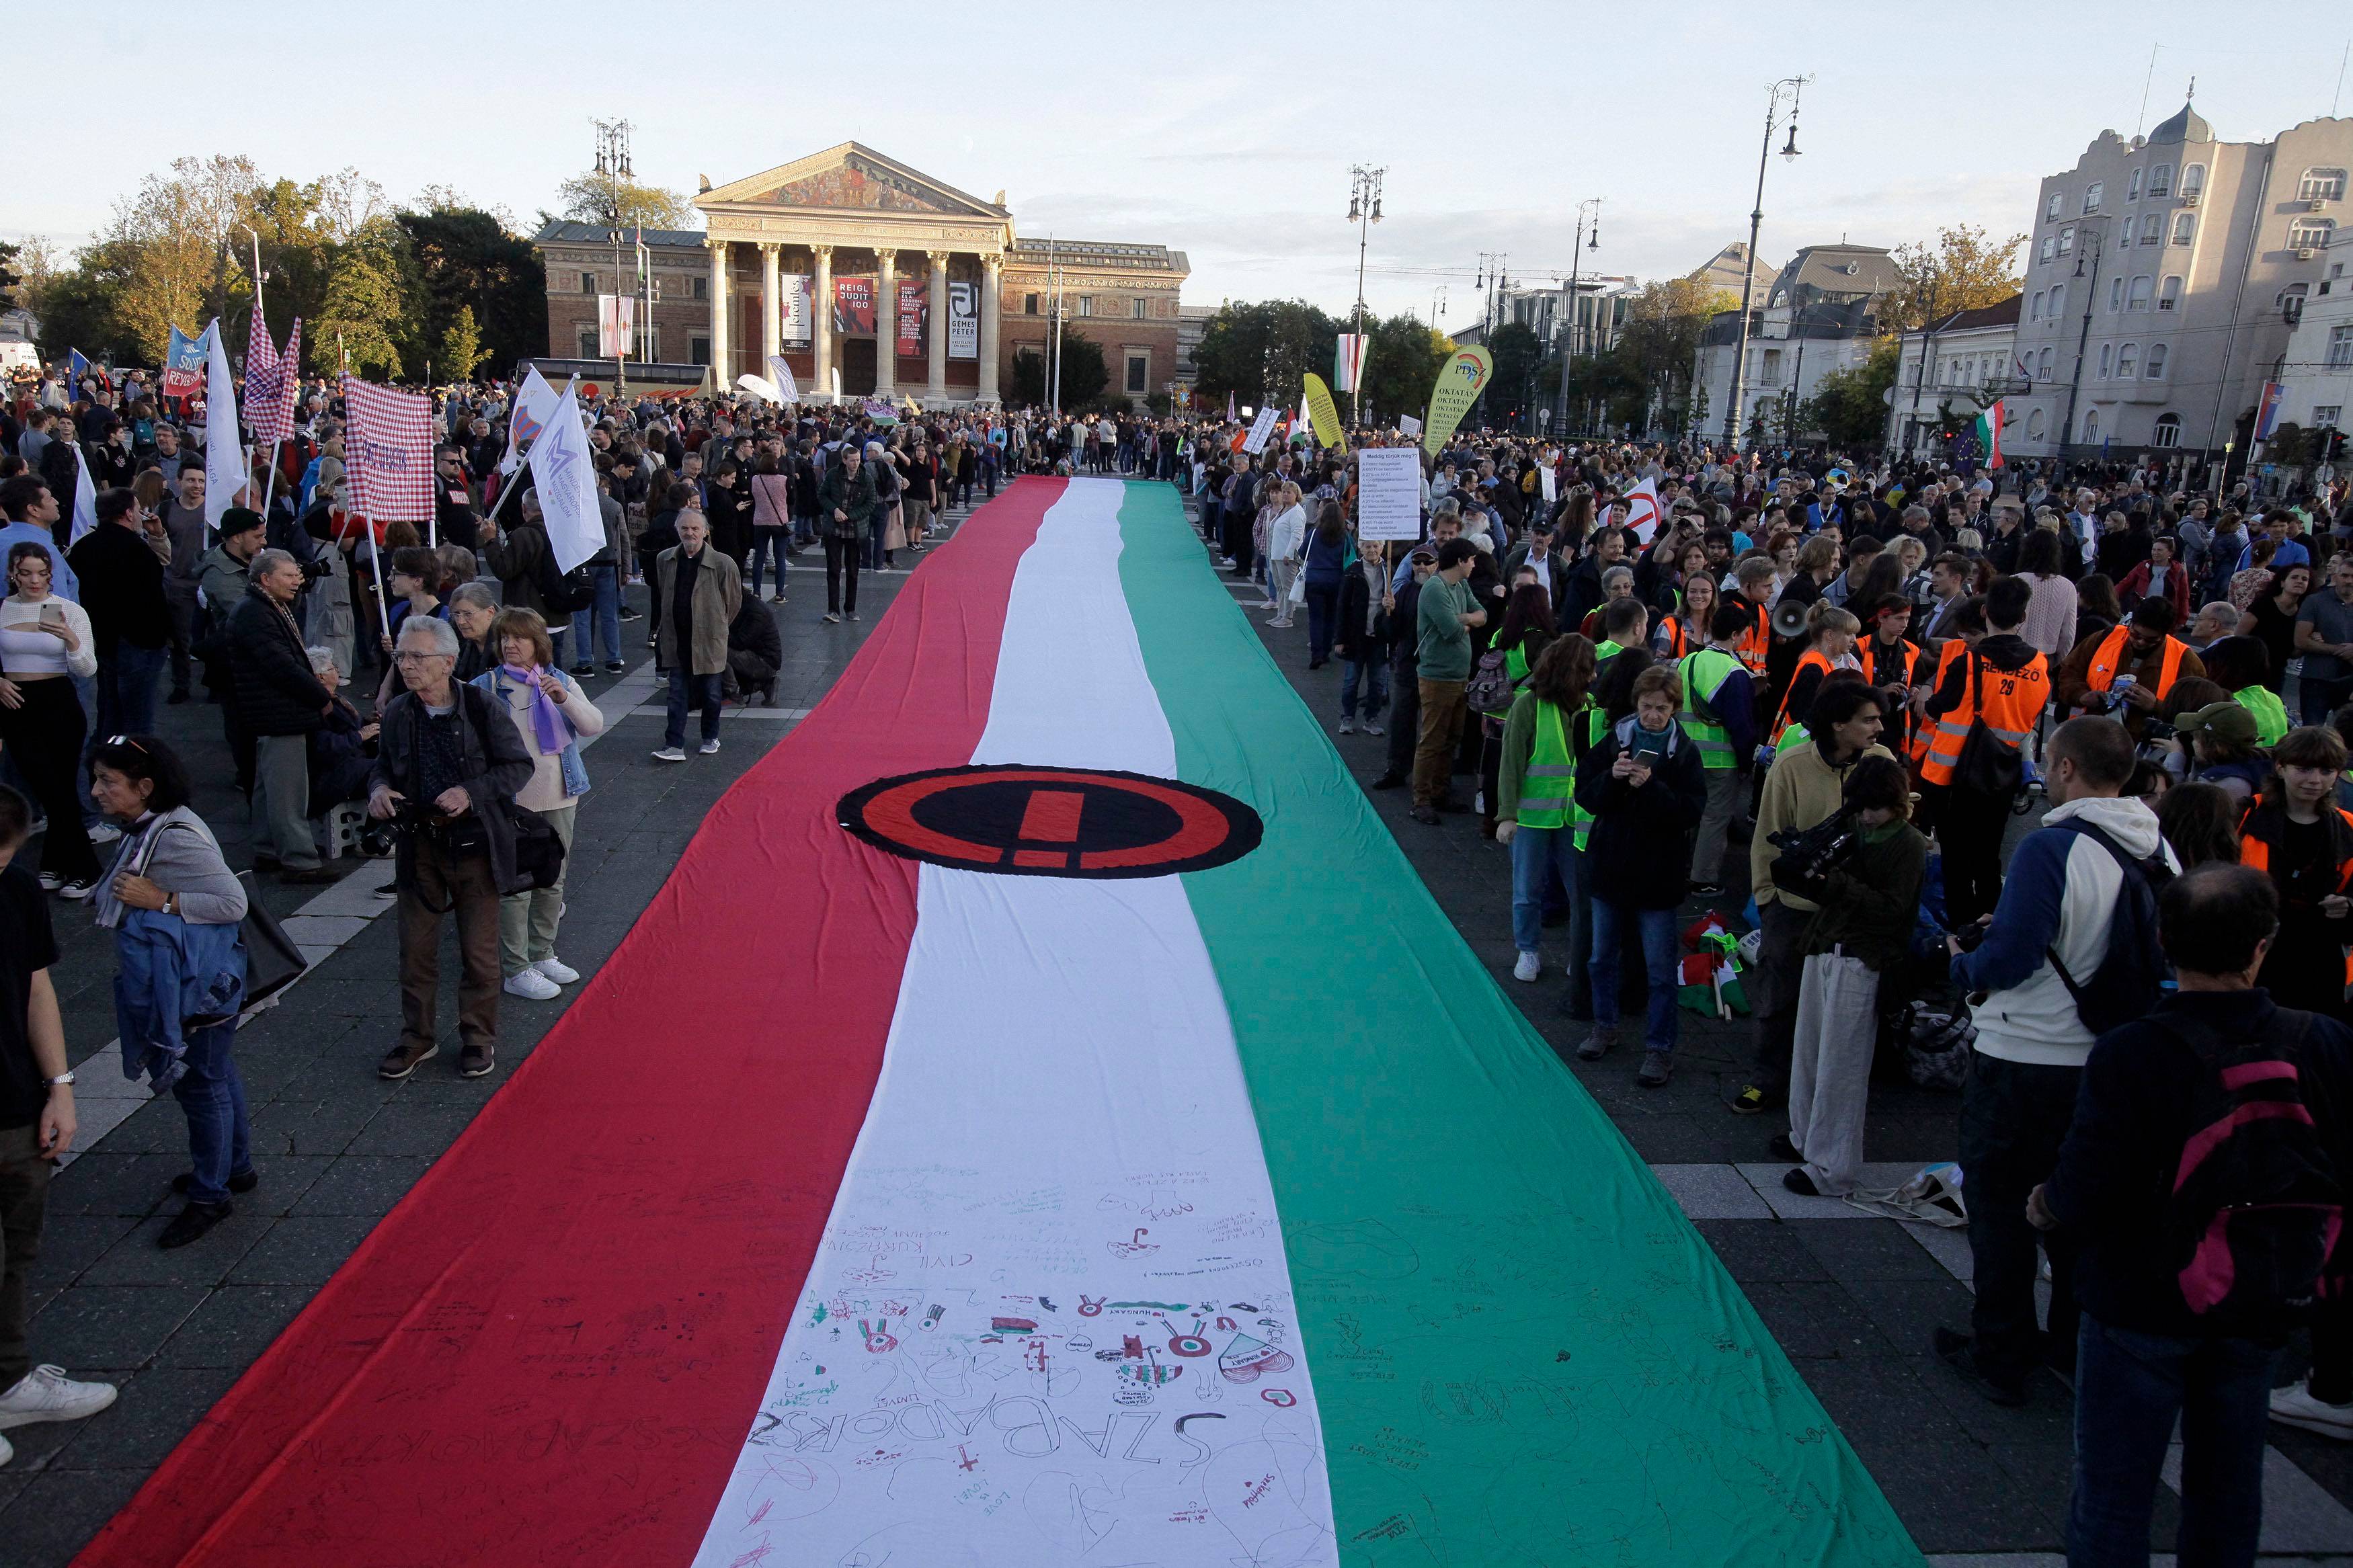 Wielka flaga węgierska w kolorze czerwono-biało-zielonym niesiona przez uczestników demonstracji